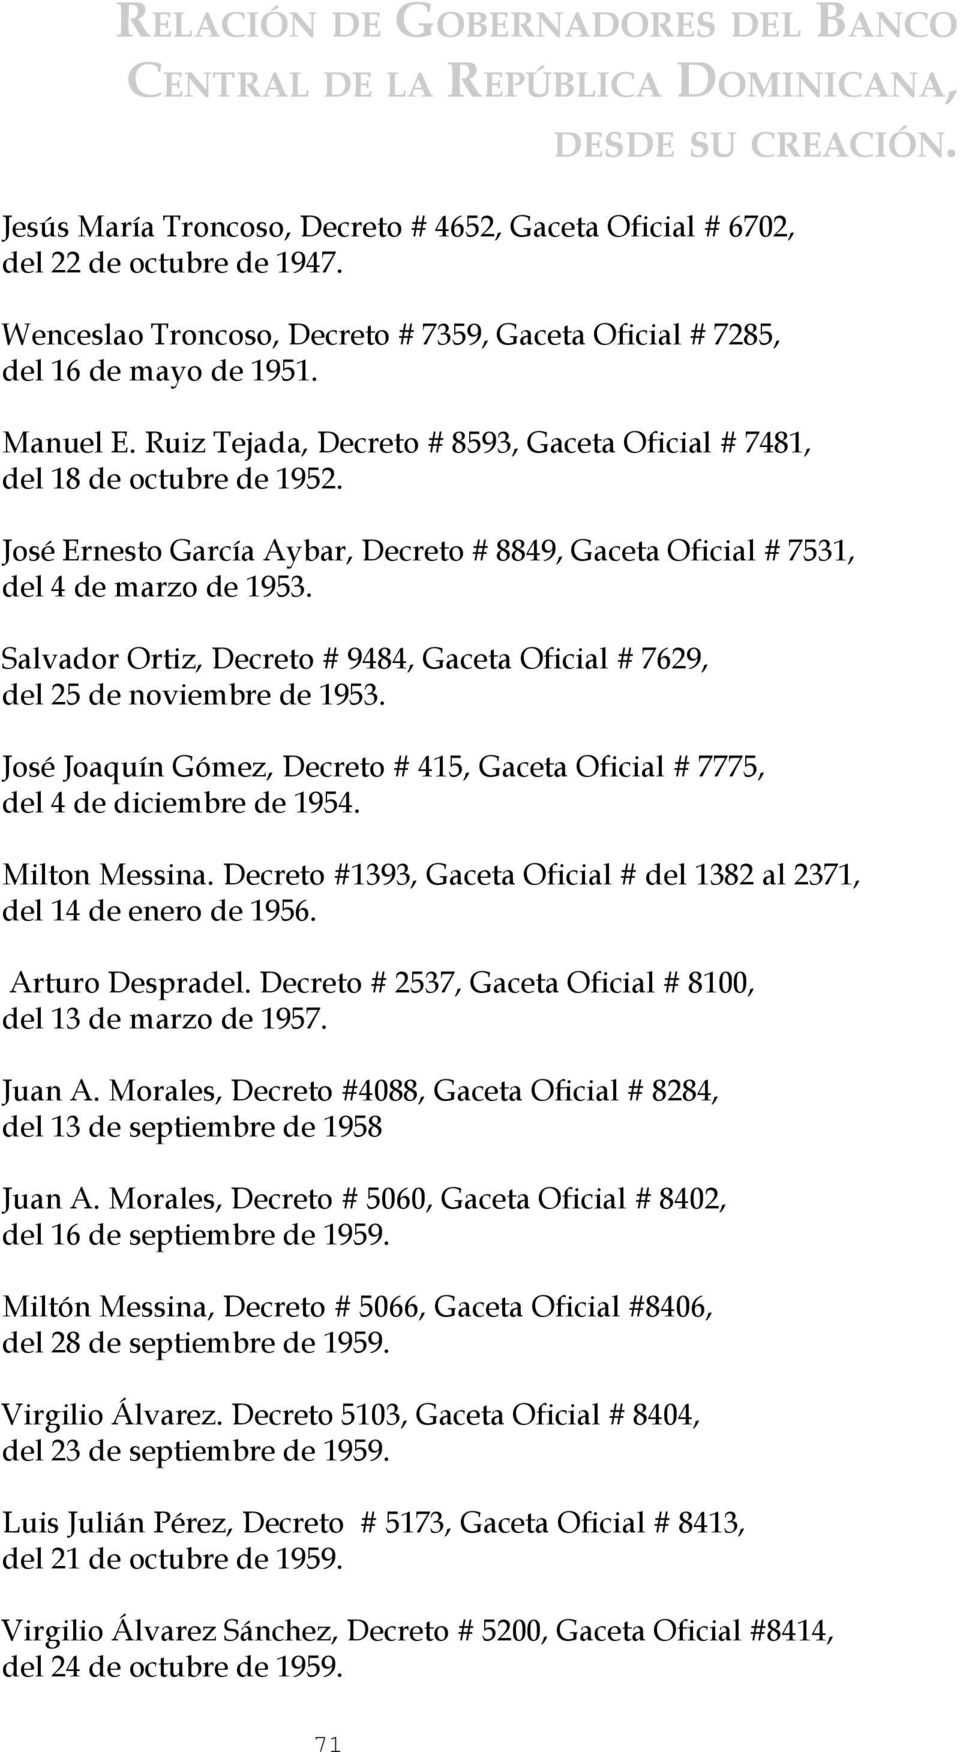 José Ernesto García Aybar, Decreto # 8849, Gaceta Oficial # 7531, del 4 de marzo de 1953. Salvador Ortiz, Decreto # 9484, Gaceta Oficial # 7629, del 25 de noviembre de 1953.